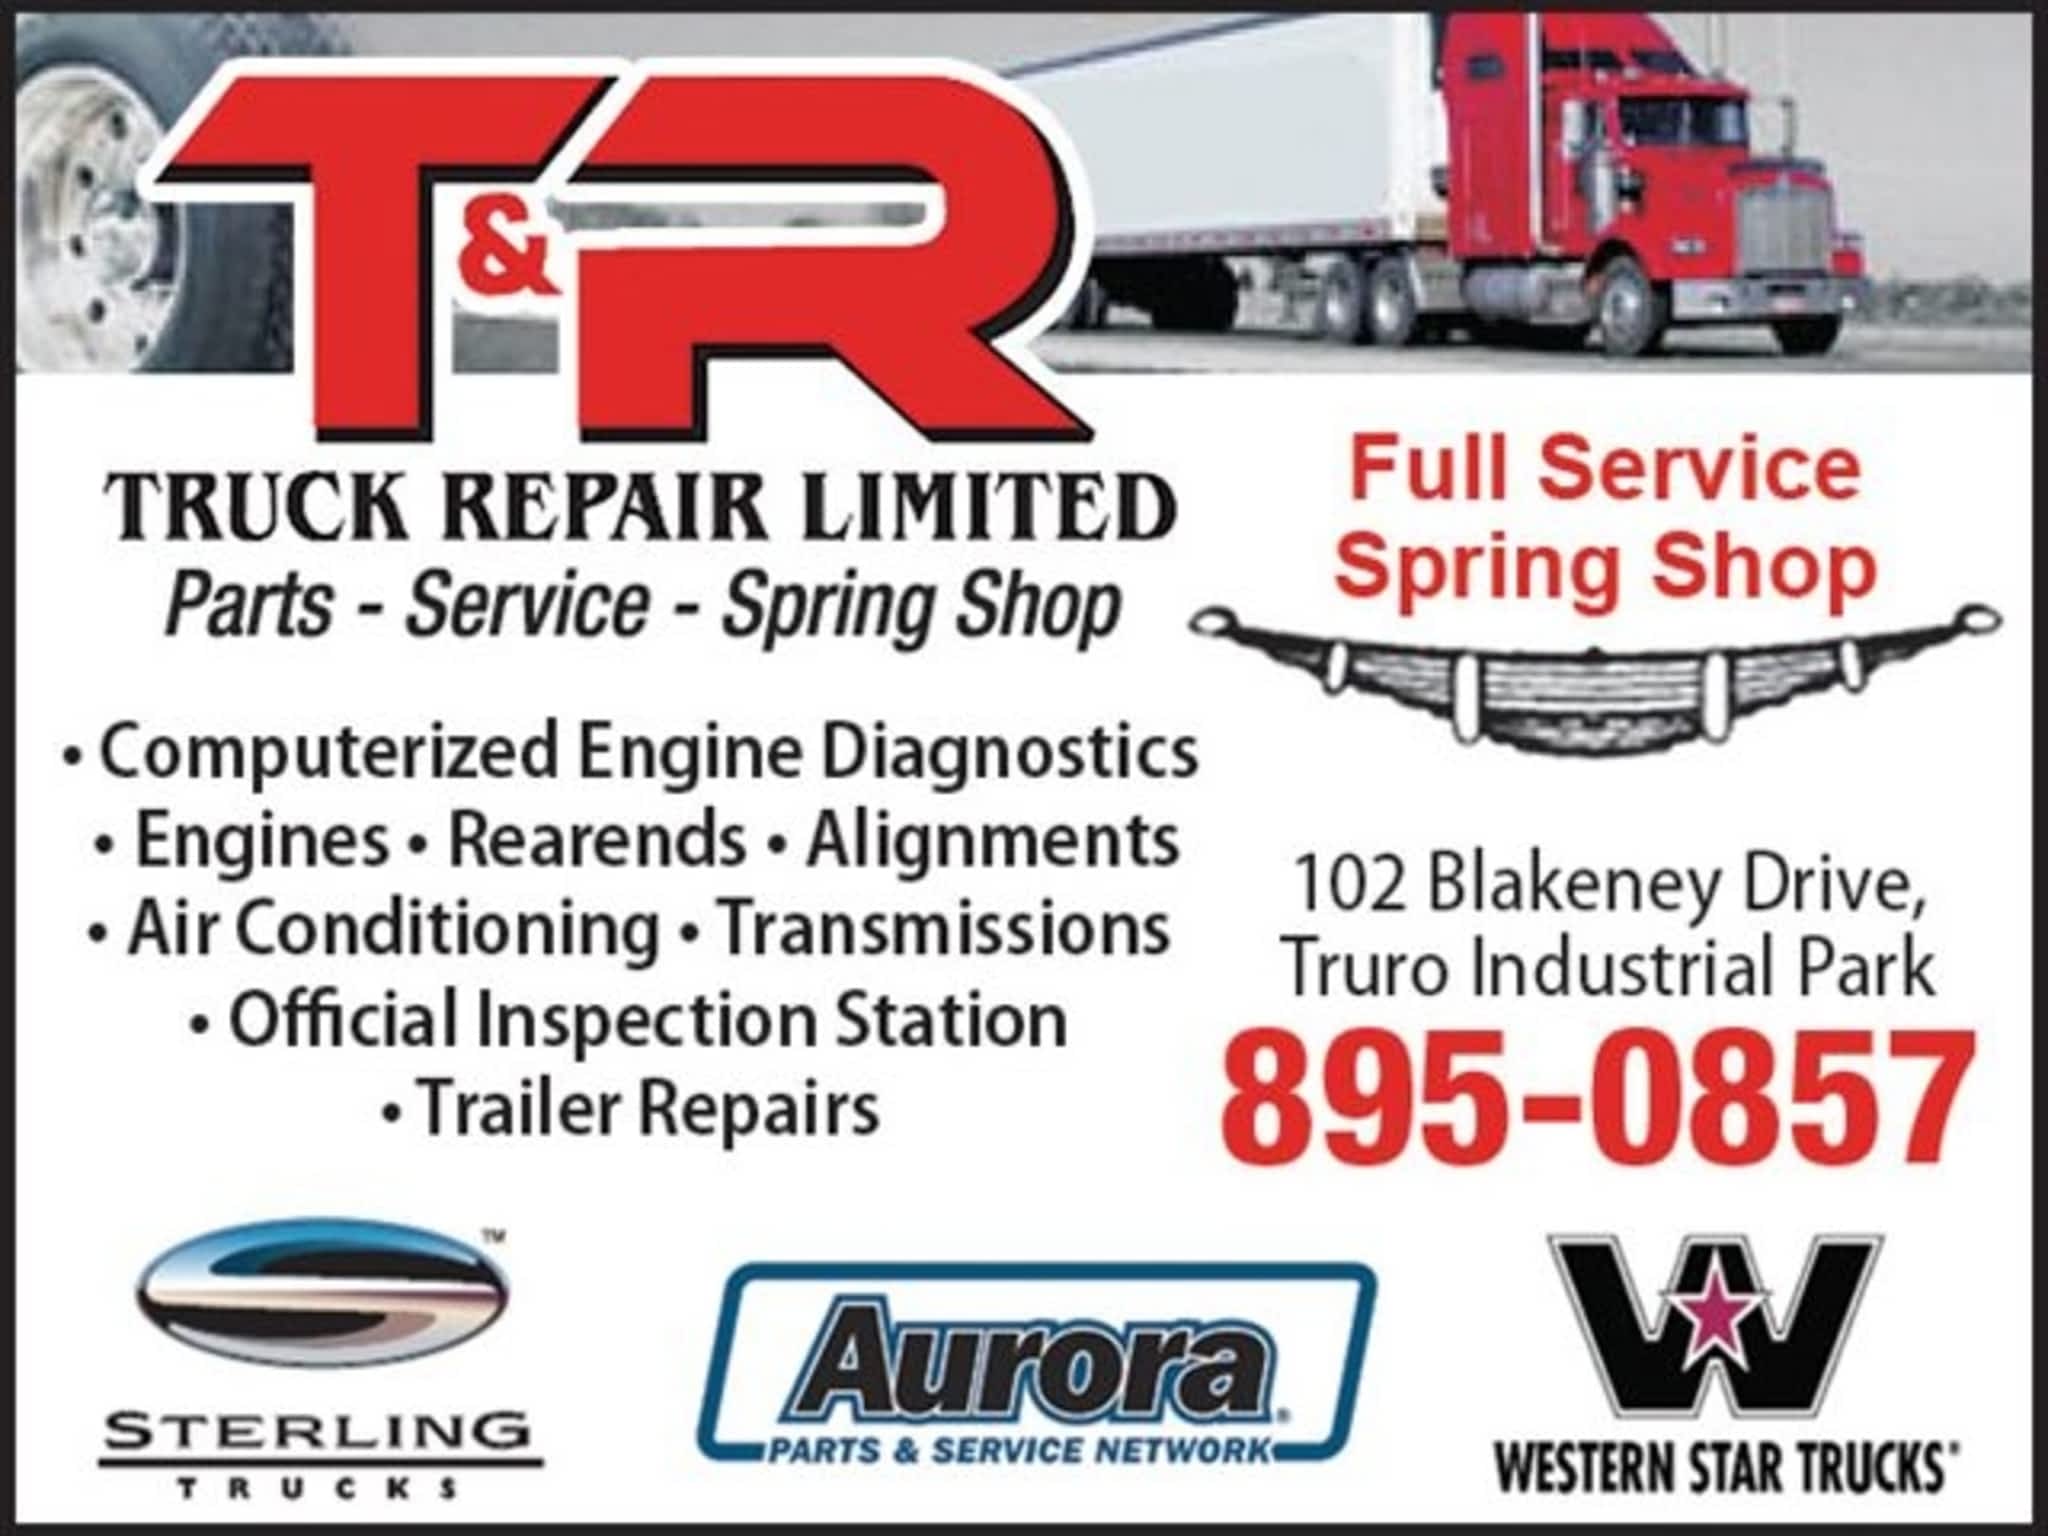 photo T&R Truck Repair Ltd